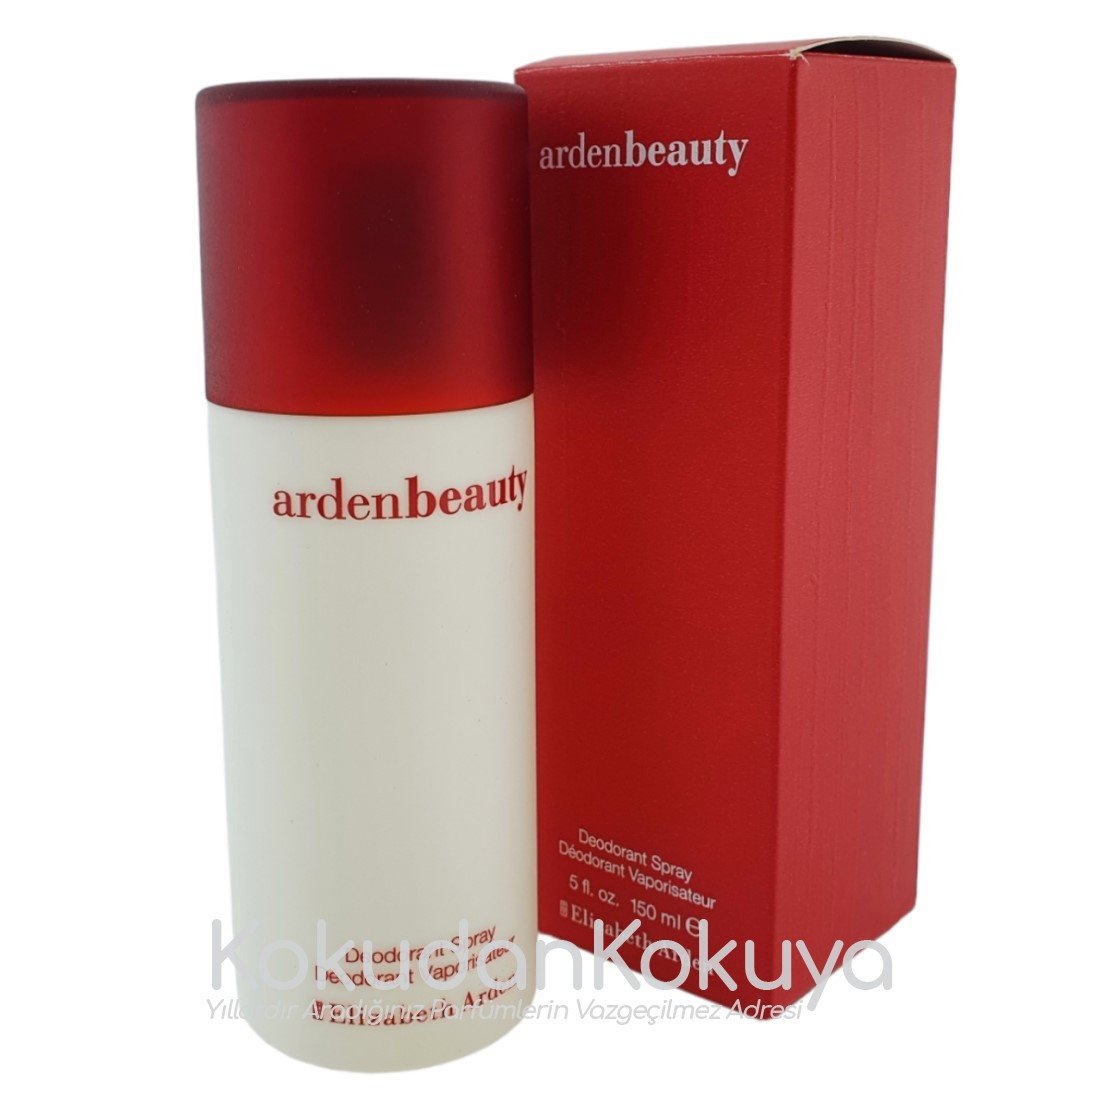 ELIZABETH ARDEN Arden Beauty (Vintage) Deodorant Kadın 150ml Deodorant Spray (Cam) 